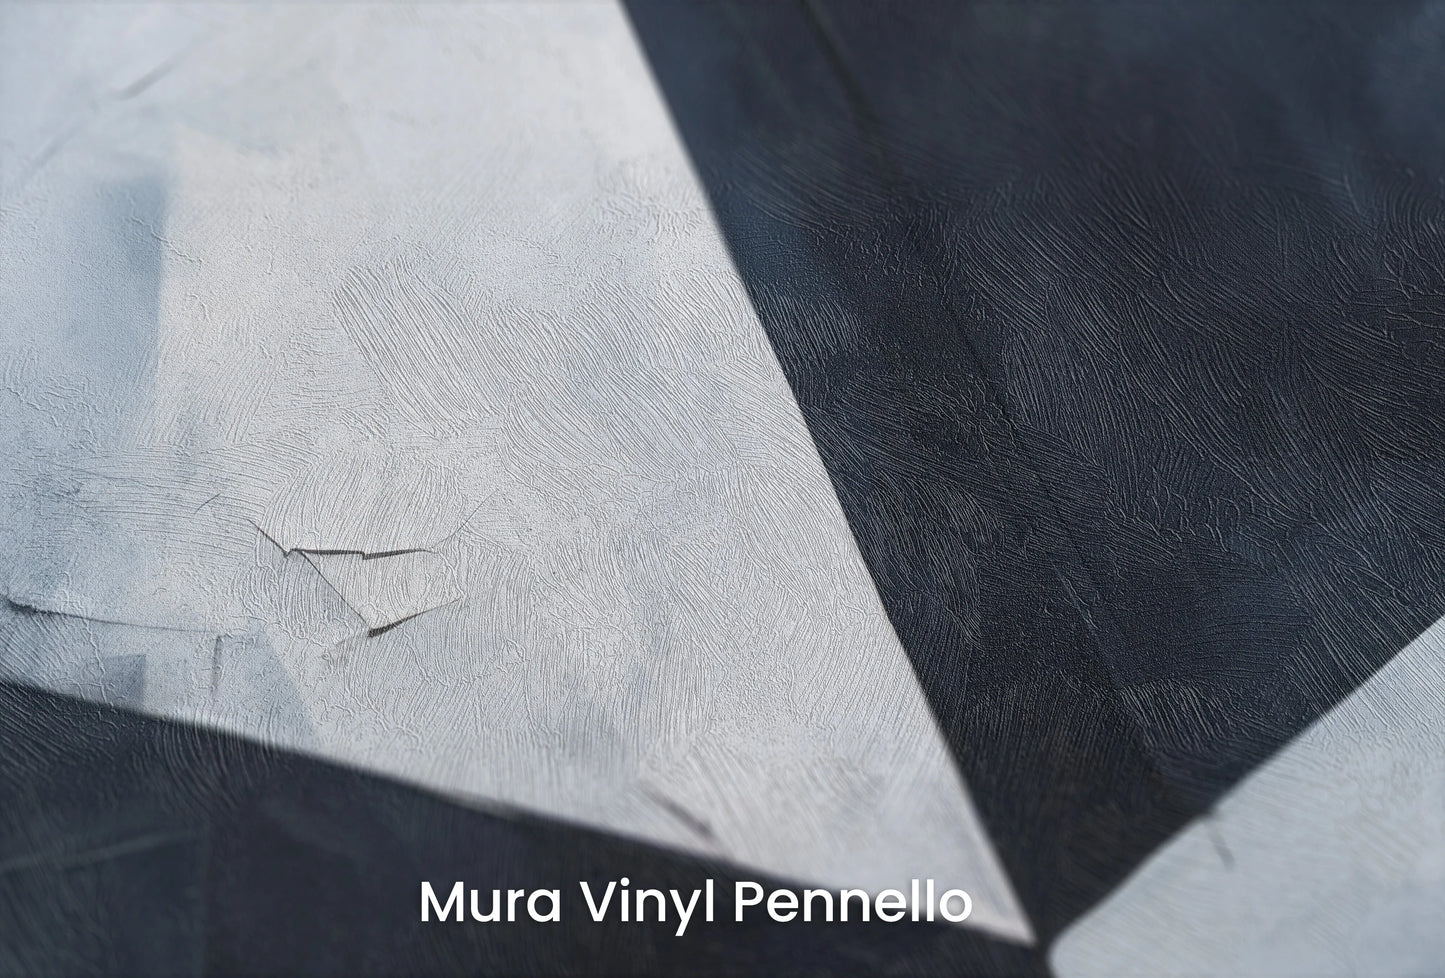 Zbliżenie na artystyczną fototapetę o nazwie Sharp Contrast na podłożu Mura Vinyl Pennello - faktura pociągnięć pędzla malarskiego.